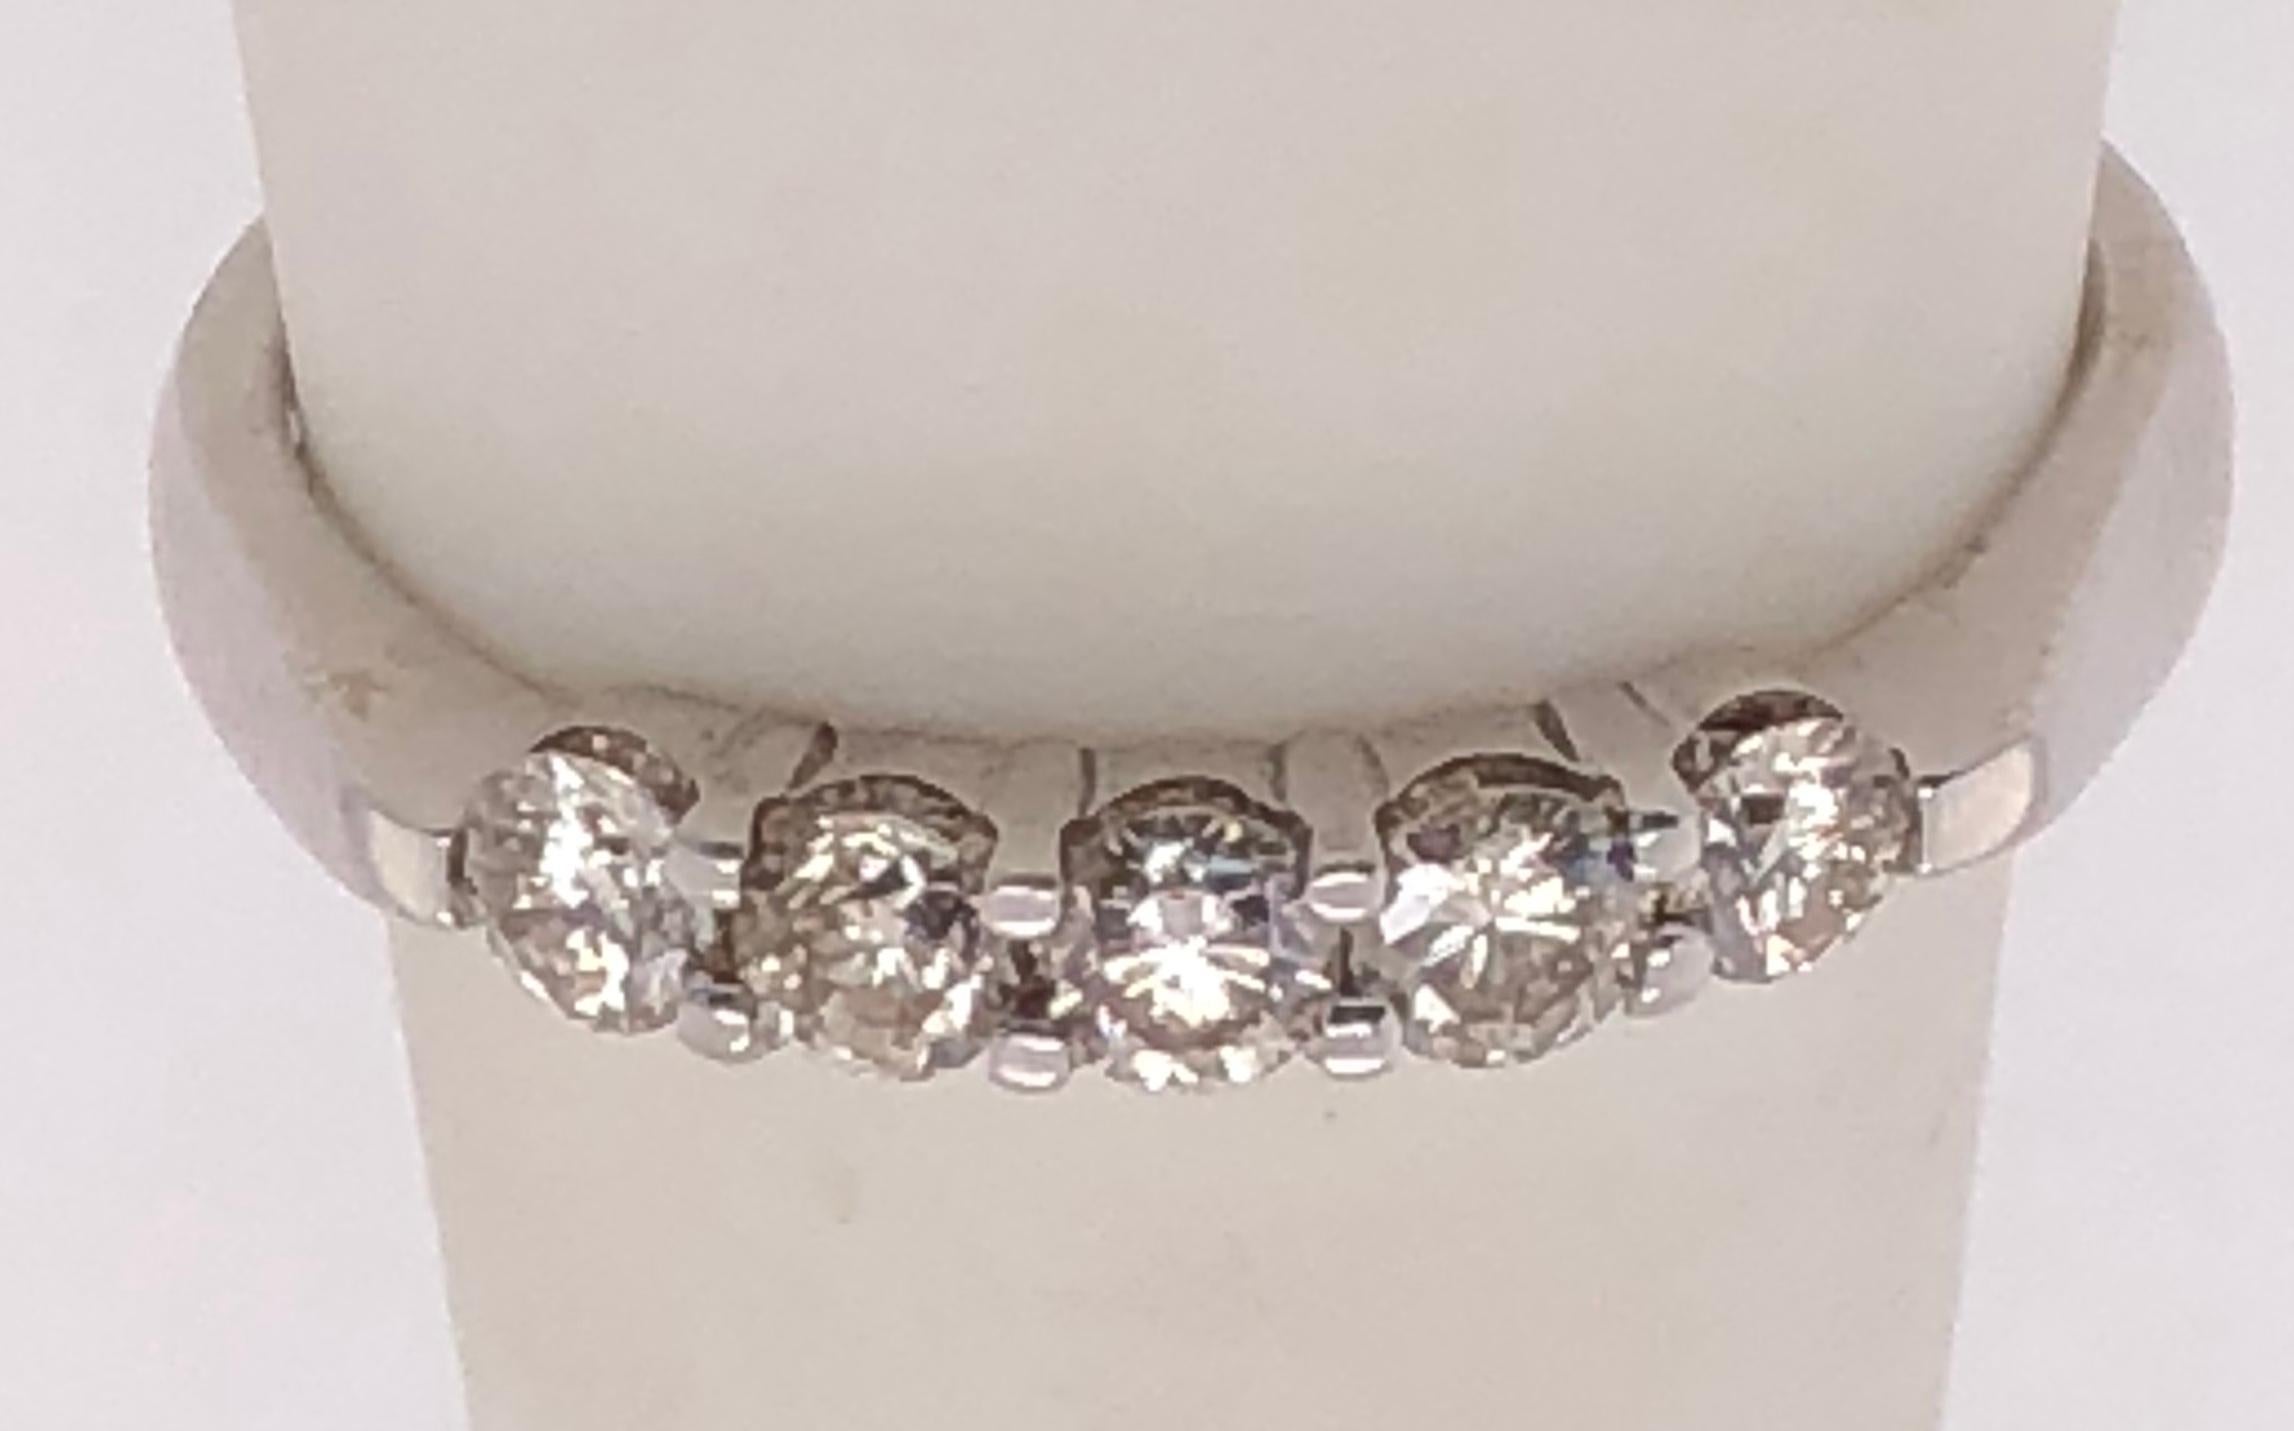 zeitgenössischer Ring aus 18 Karat Weißgold mit fünf Diamanten
Größe 8.5
4 Gramm Gesamtgewicht